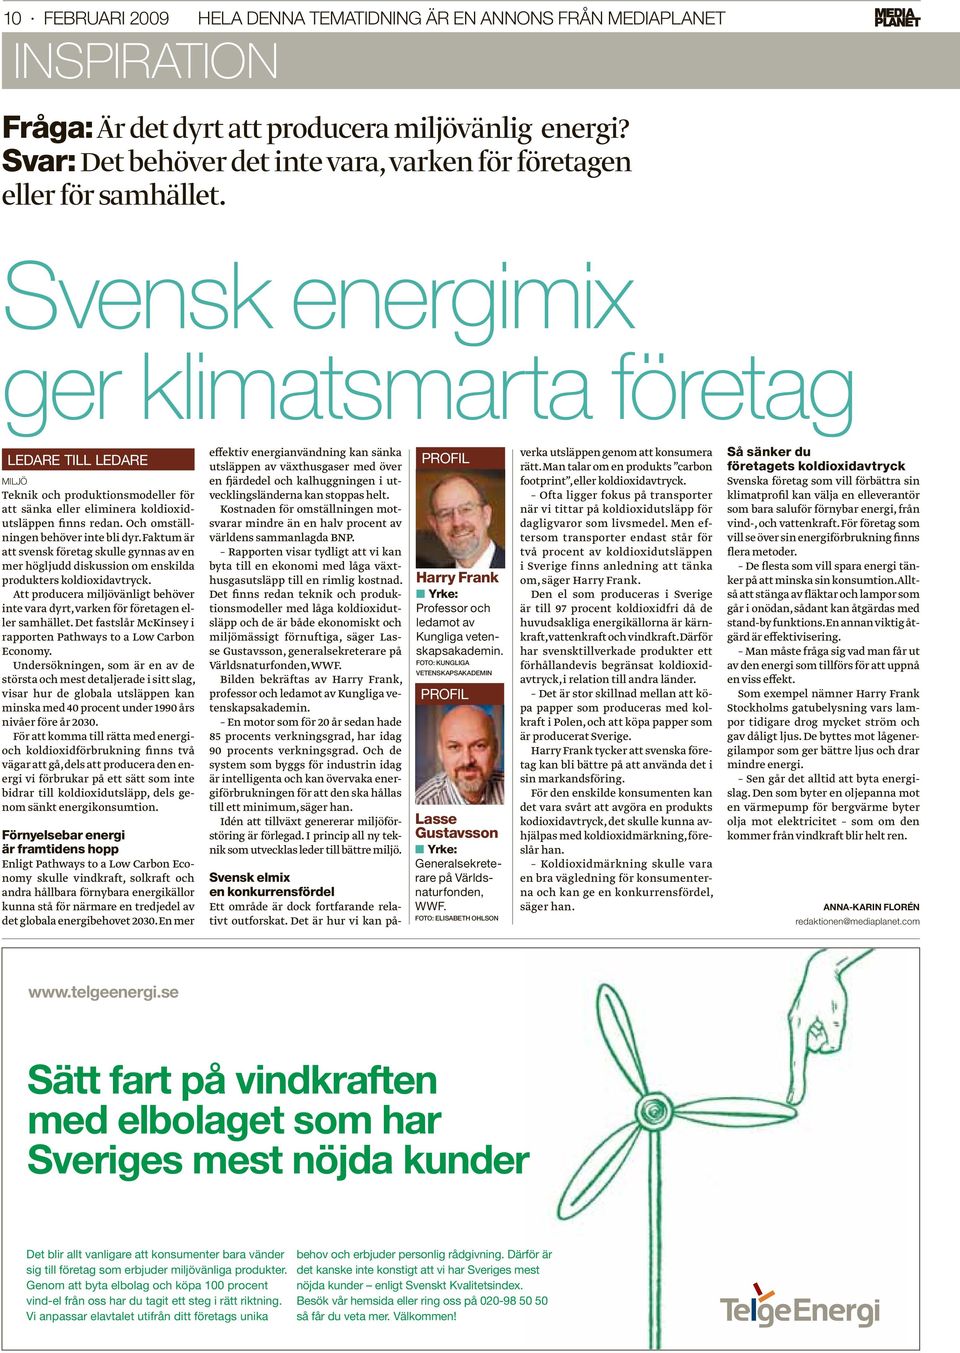 Svensk energimix ger klimatsmarta företag LEDARE TILL LEDARE MILJÖ Teknik och produktionsmodeller för att sänka eller eliminera koldioxidutsläppen finns redan. Och omställningen behöver inte bli dyr.